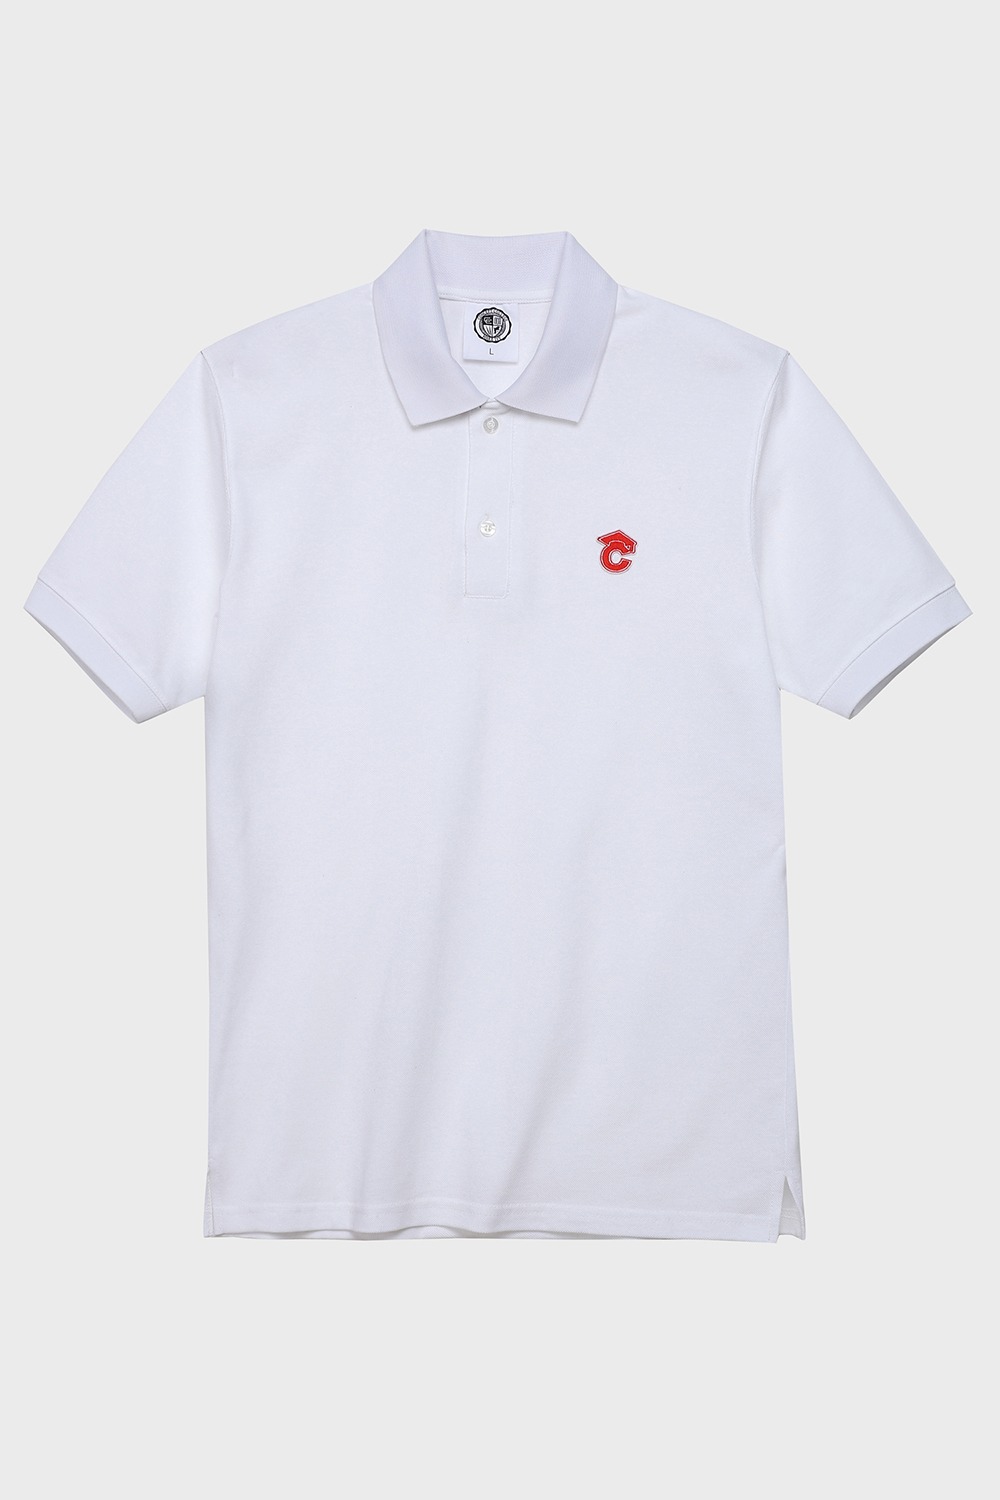 Small graduation cap patch Unisex pique polo shirt (White) RICHEZ